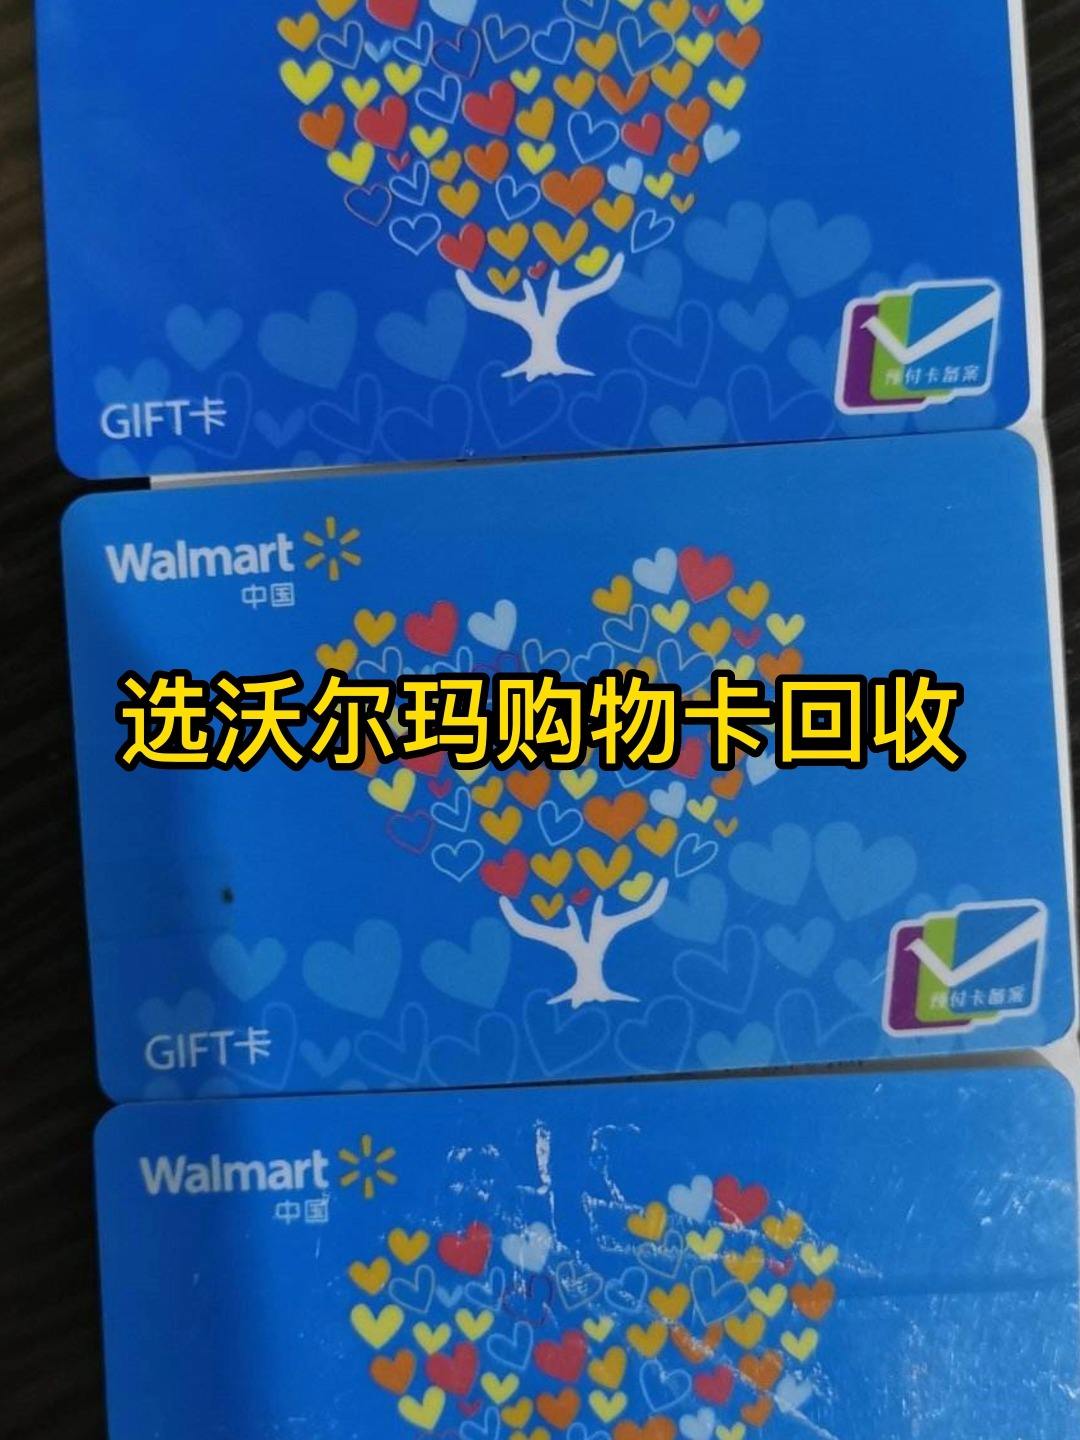 沃尔玛超市卡是沃尔玛超市推出的一种礼品卡或预付卡,可以用于孤蝌